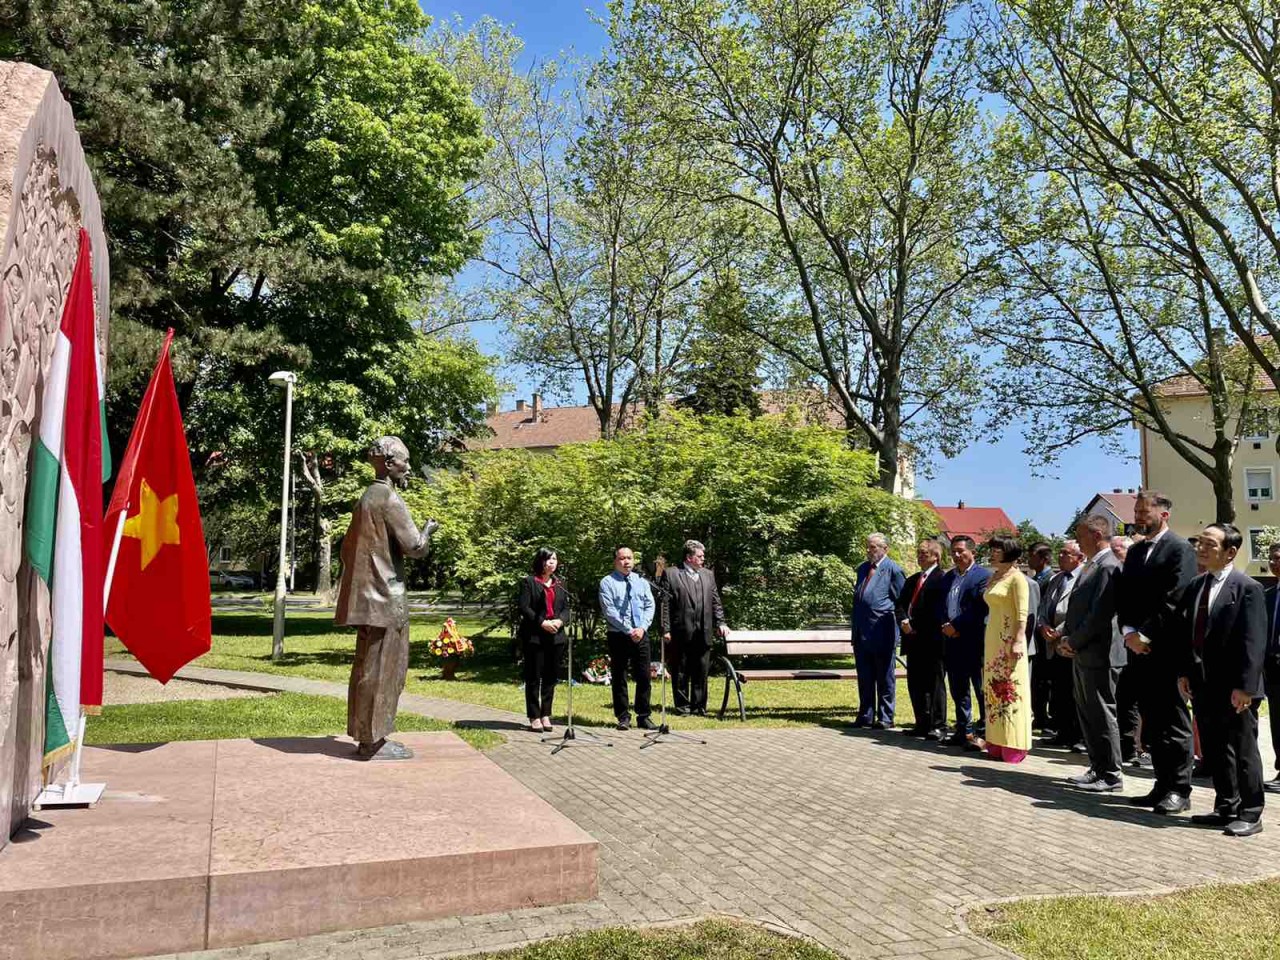 Dâng hoa và trồng cây nhớ ơn Chủ tịch Hồ Chí Minh tại Zalaegerszeg, Hungary